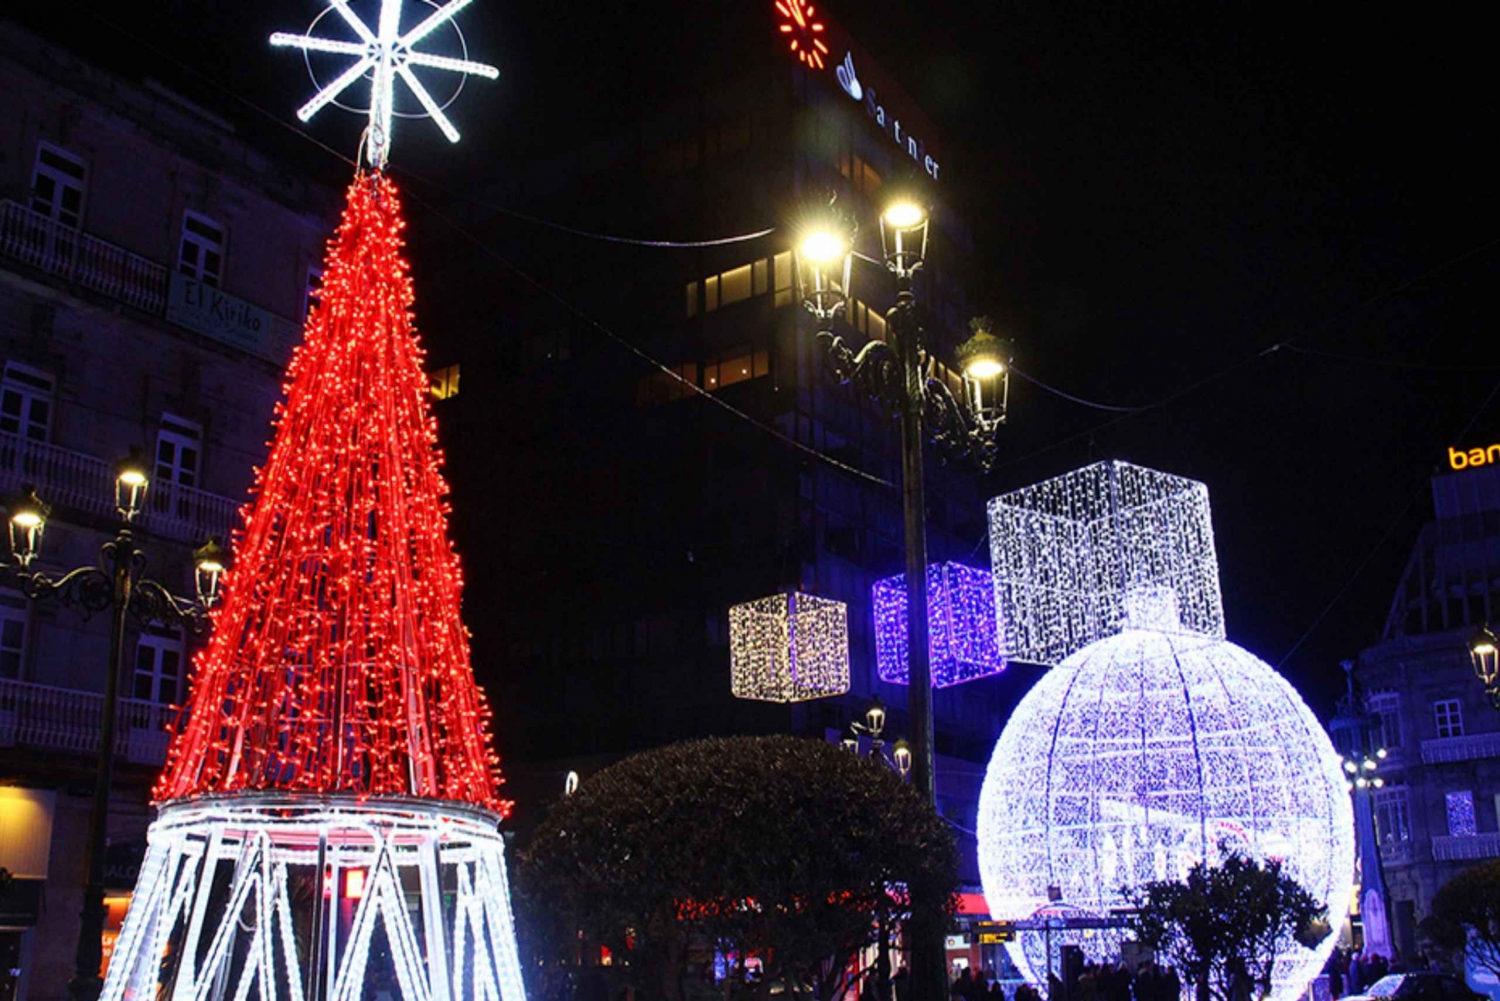 Galicia: Pontevedra & Vigo Christmas Lights Tour and Cruise